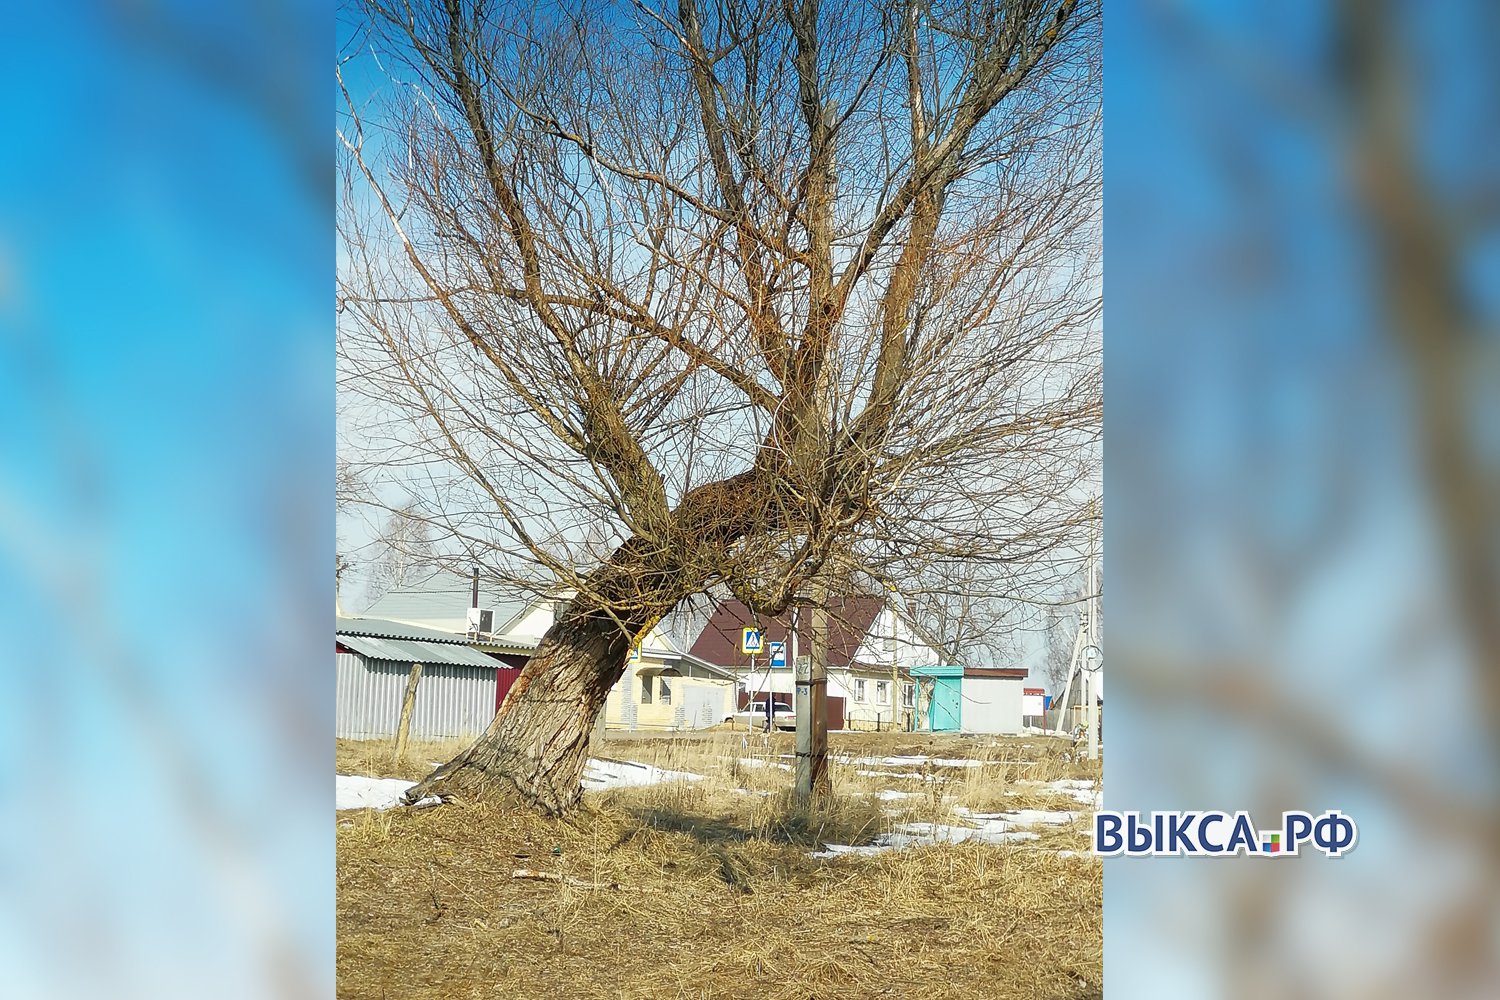 Аварийное дерево угрожает жителям Вили